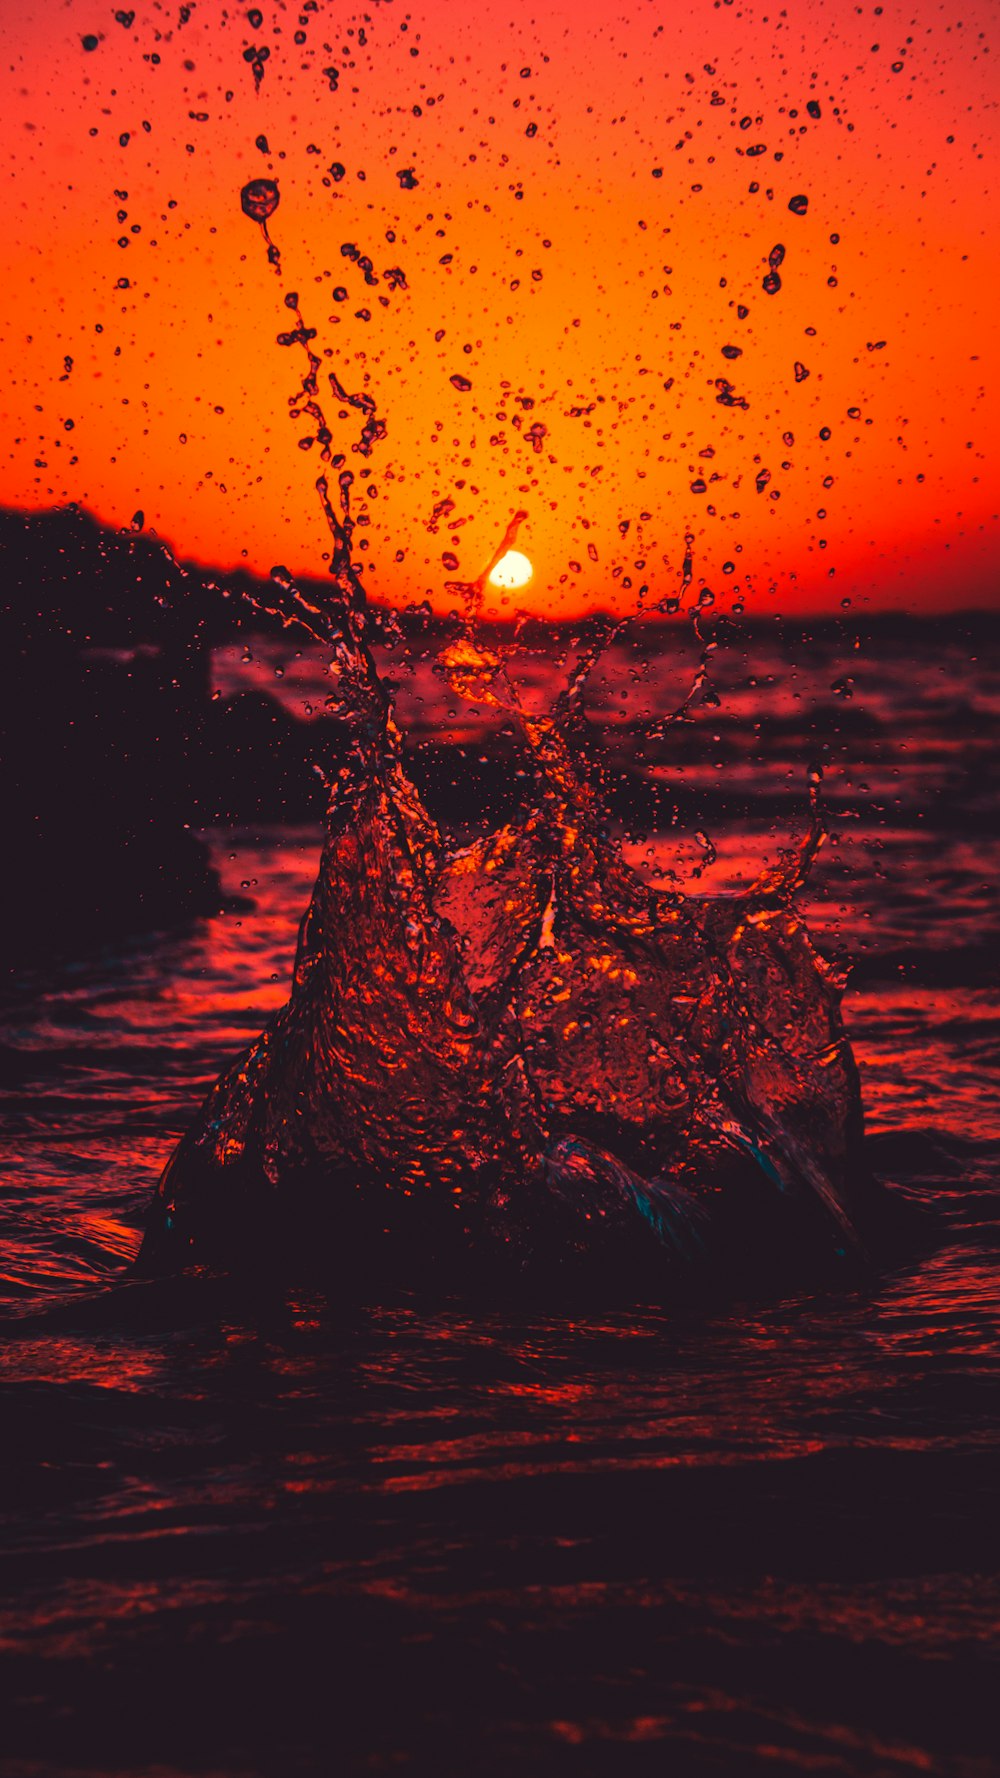 water splash on black rock during sunset